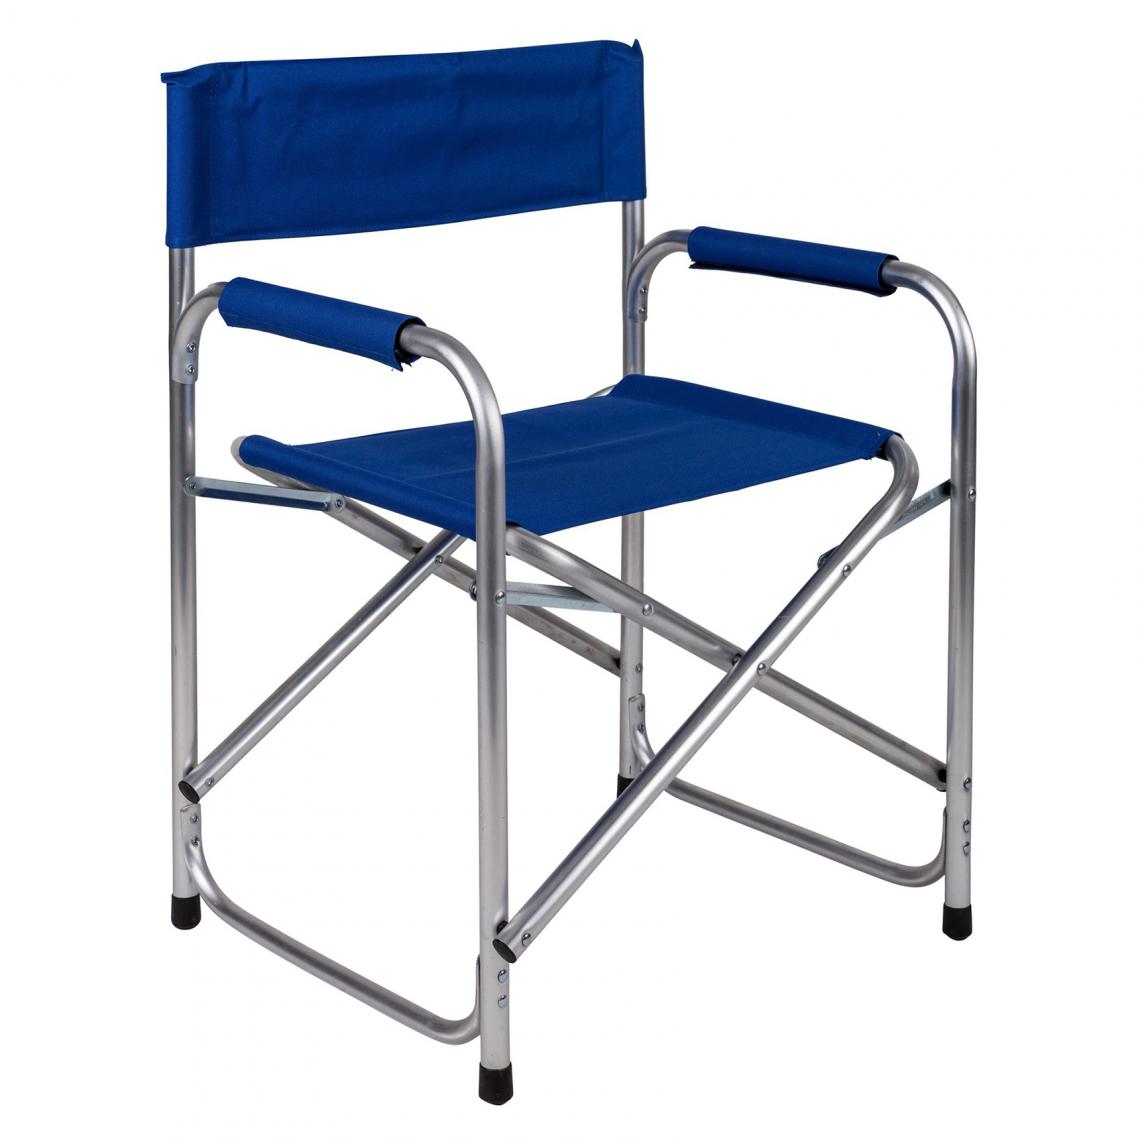 Alter - Chaise de camping pliante en aluminium et tissu, coloris bleu, ouverte : 59 x 48 x h78 cm - Chaises